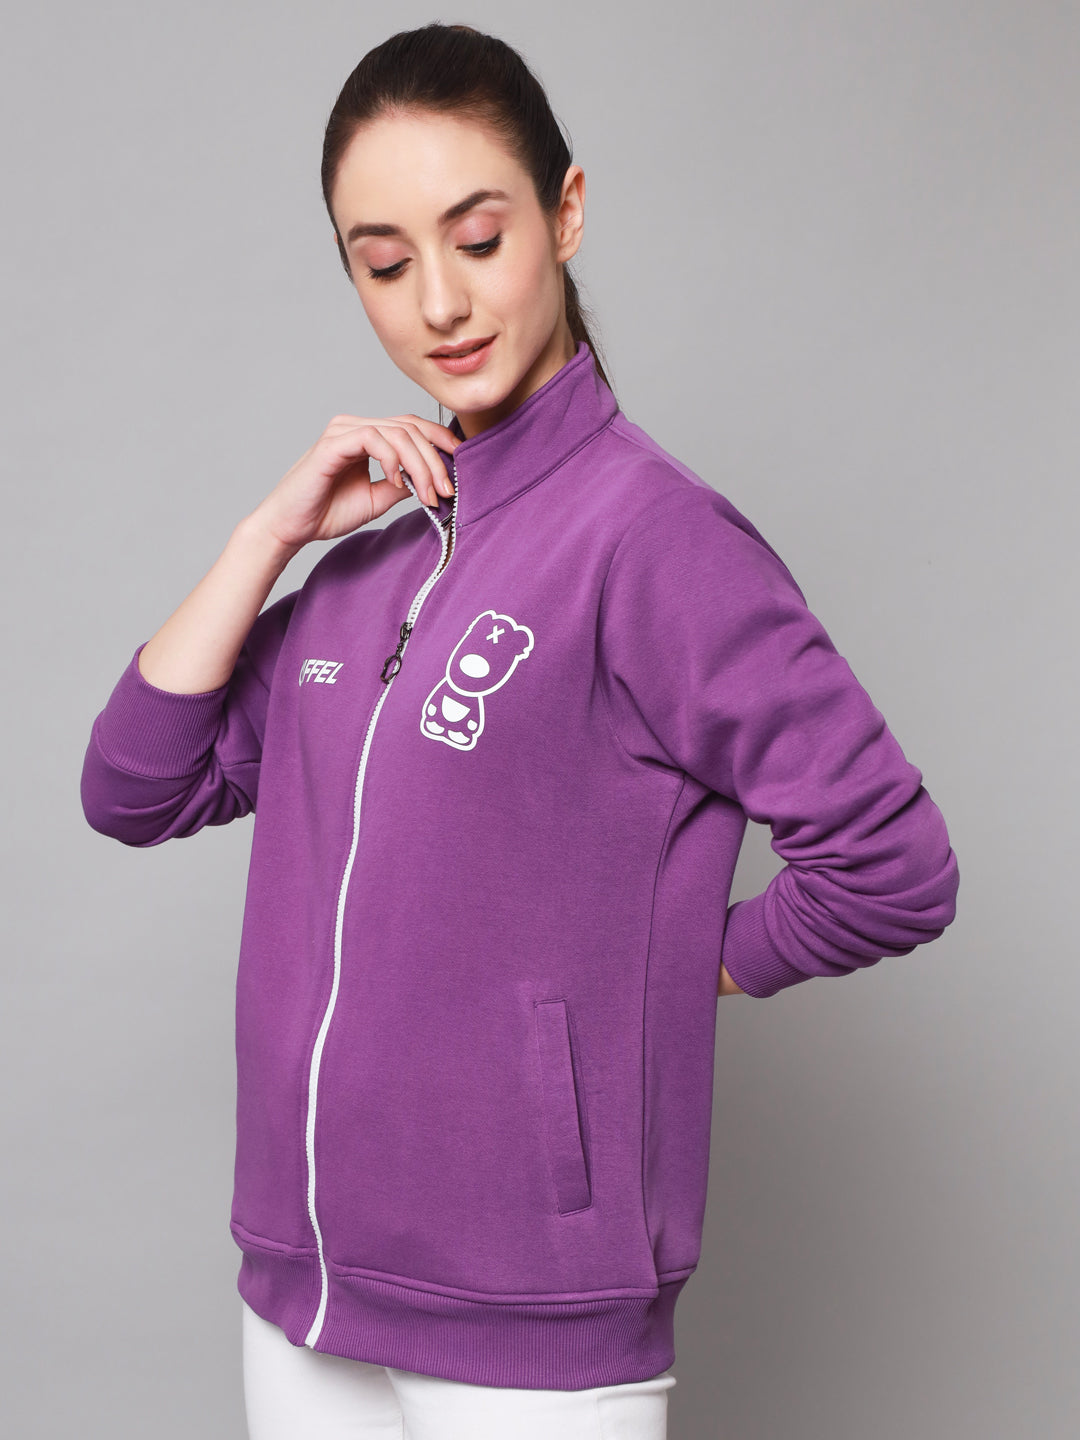 Griffel Women’s Cotton Fleece Full Sleeve Dark Purple Zipper Sweatshirt - griffel